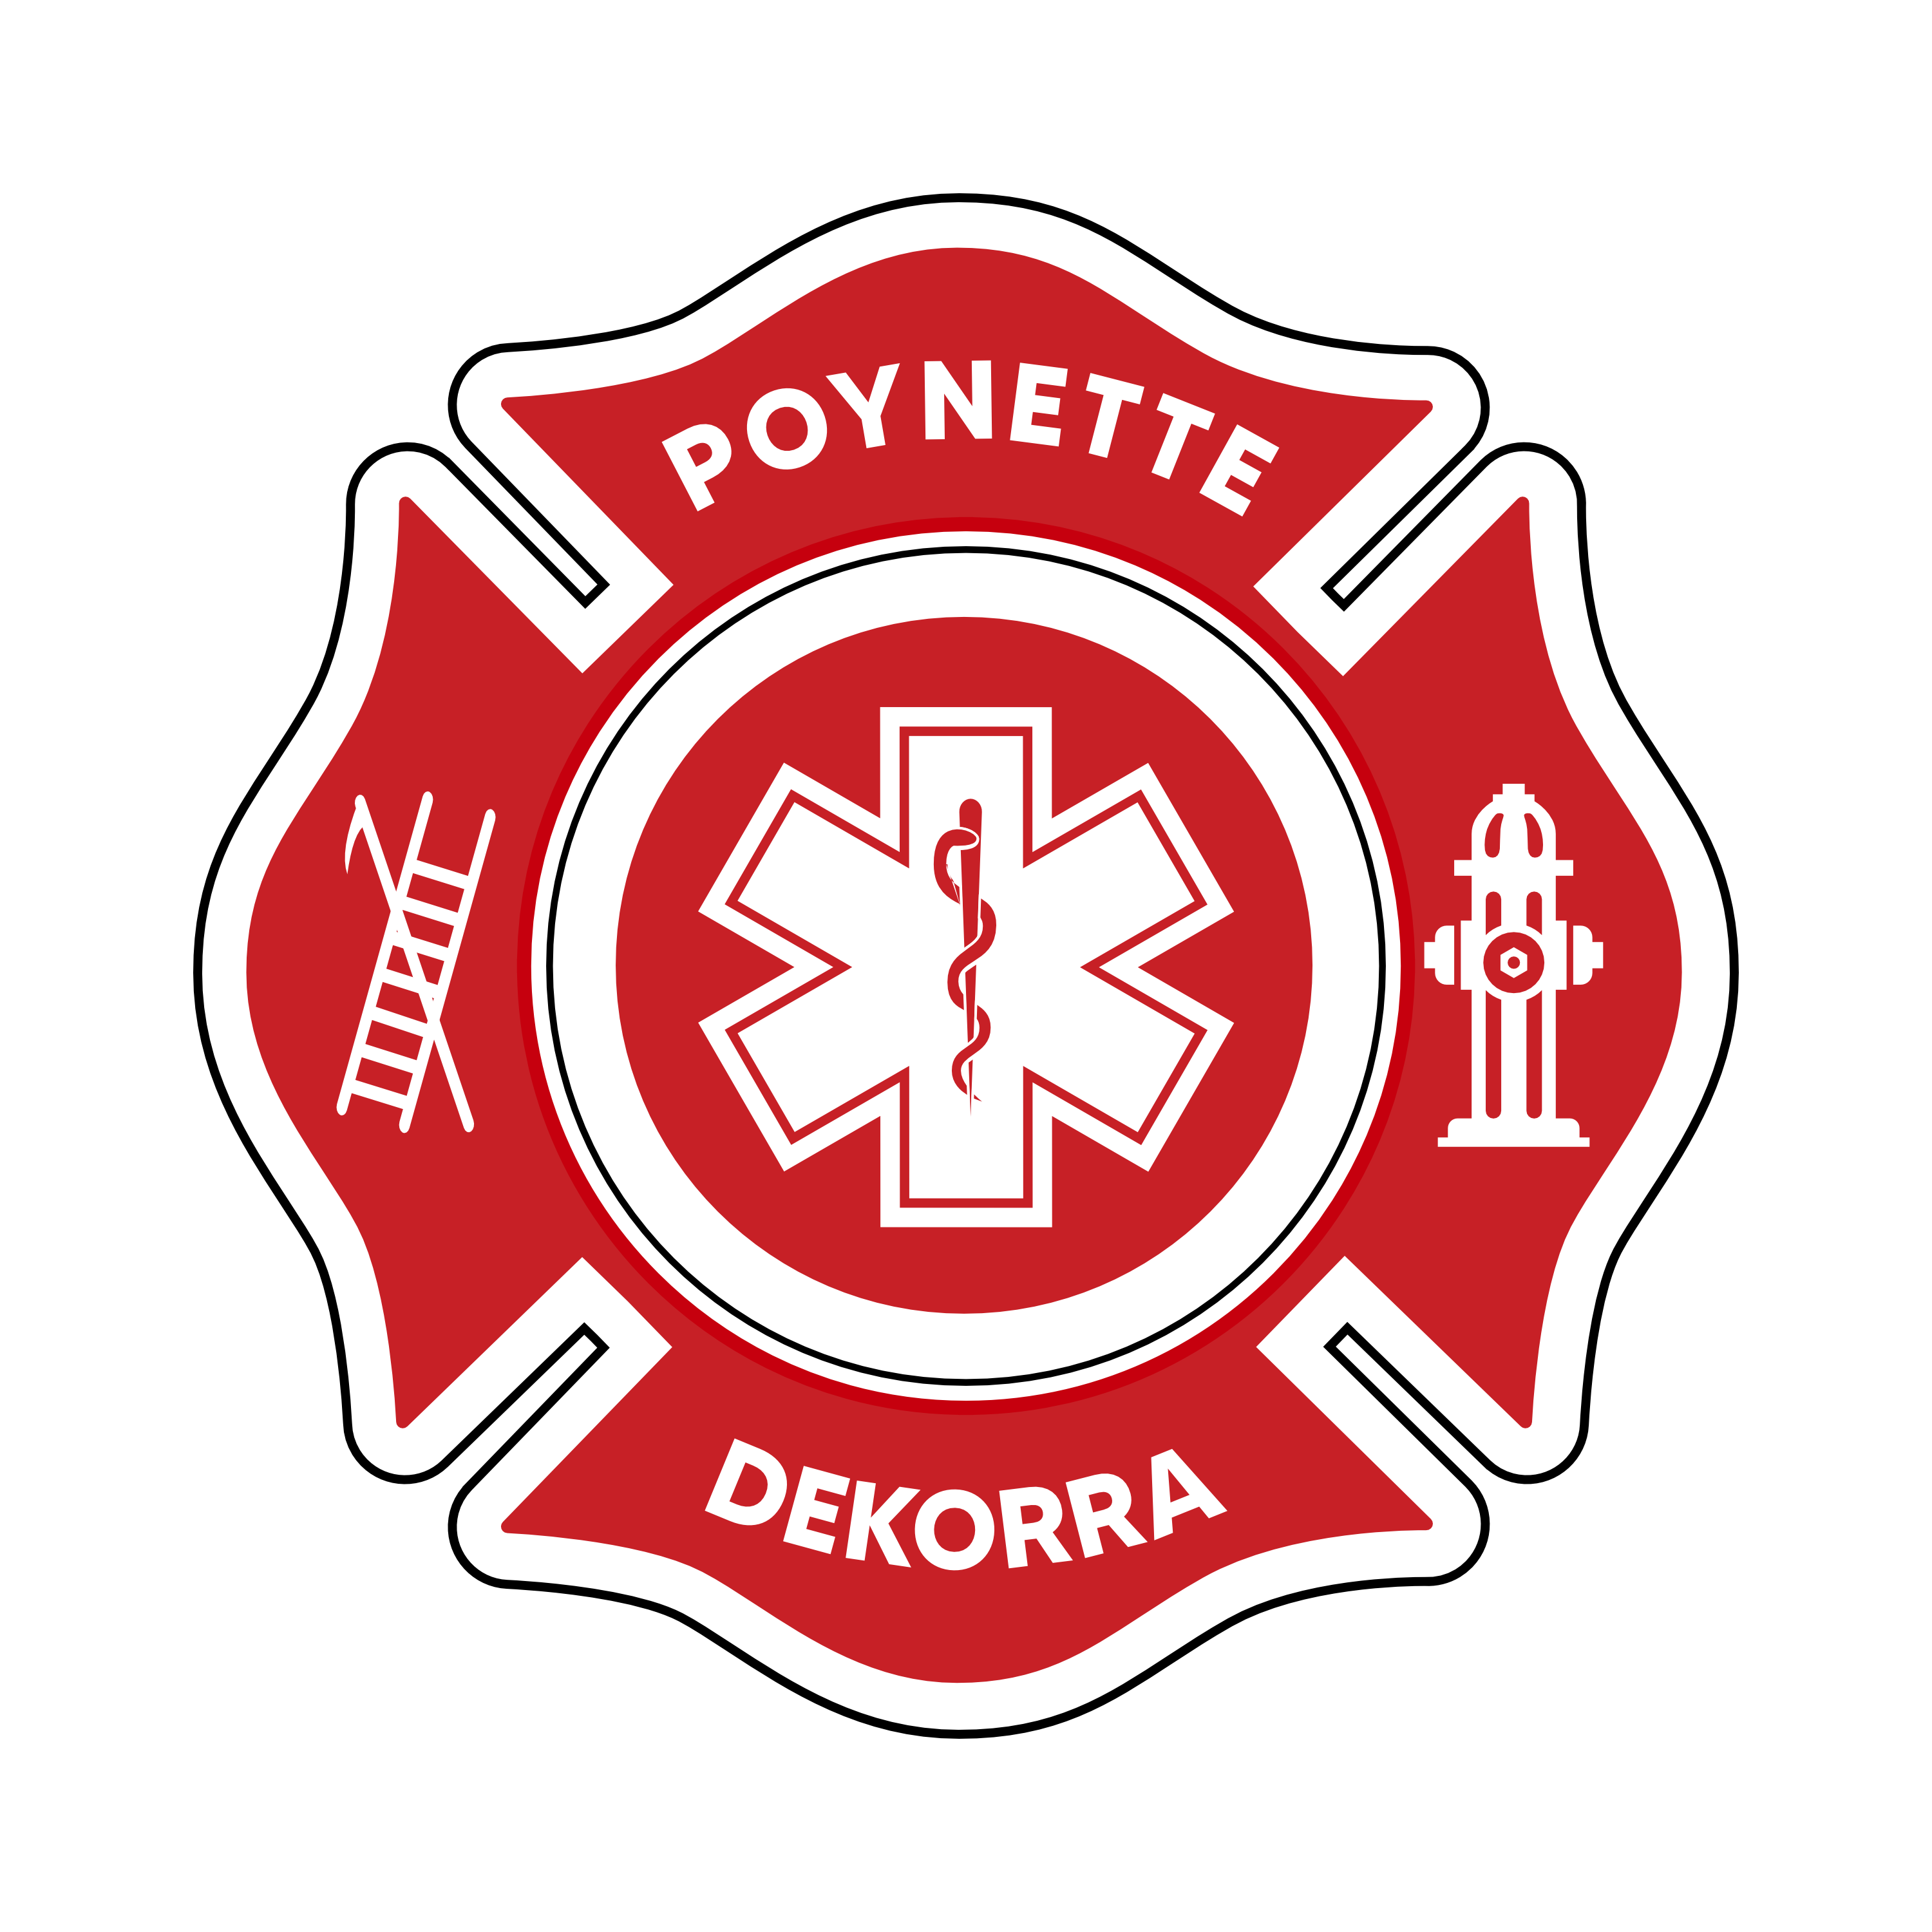 Poynette Dekorra Fire Protection District